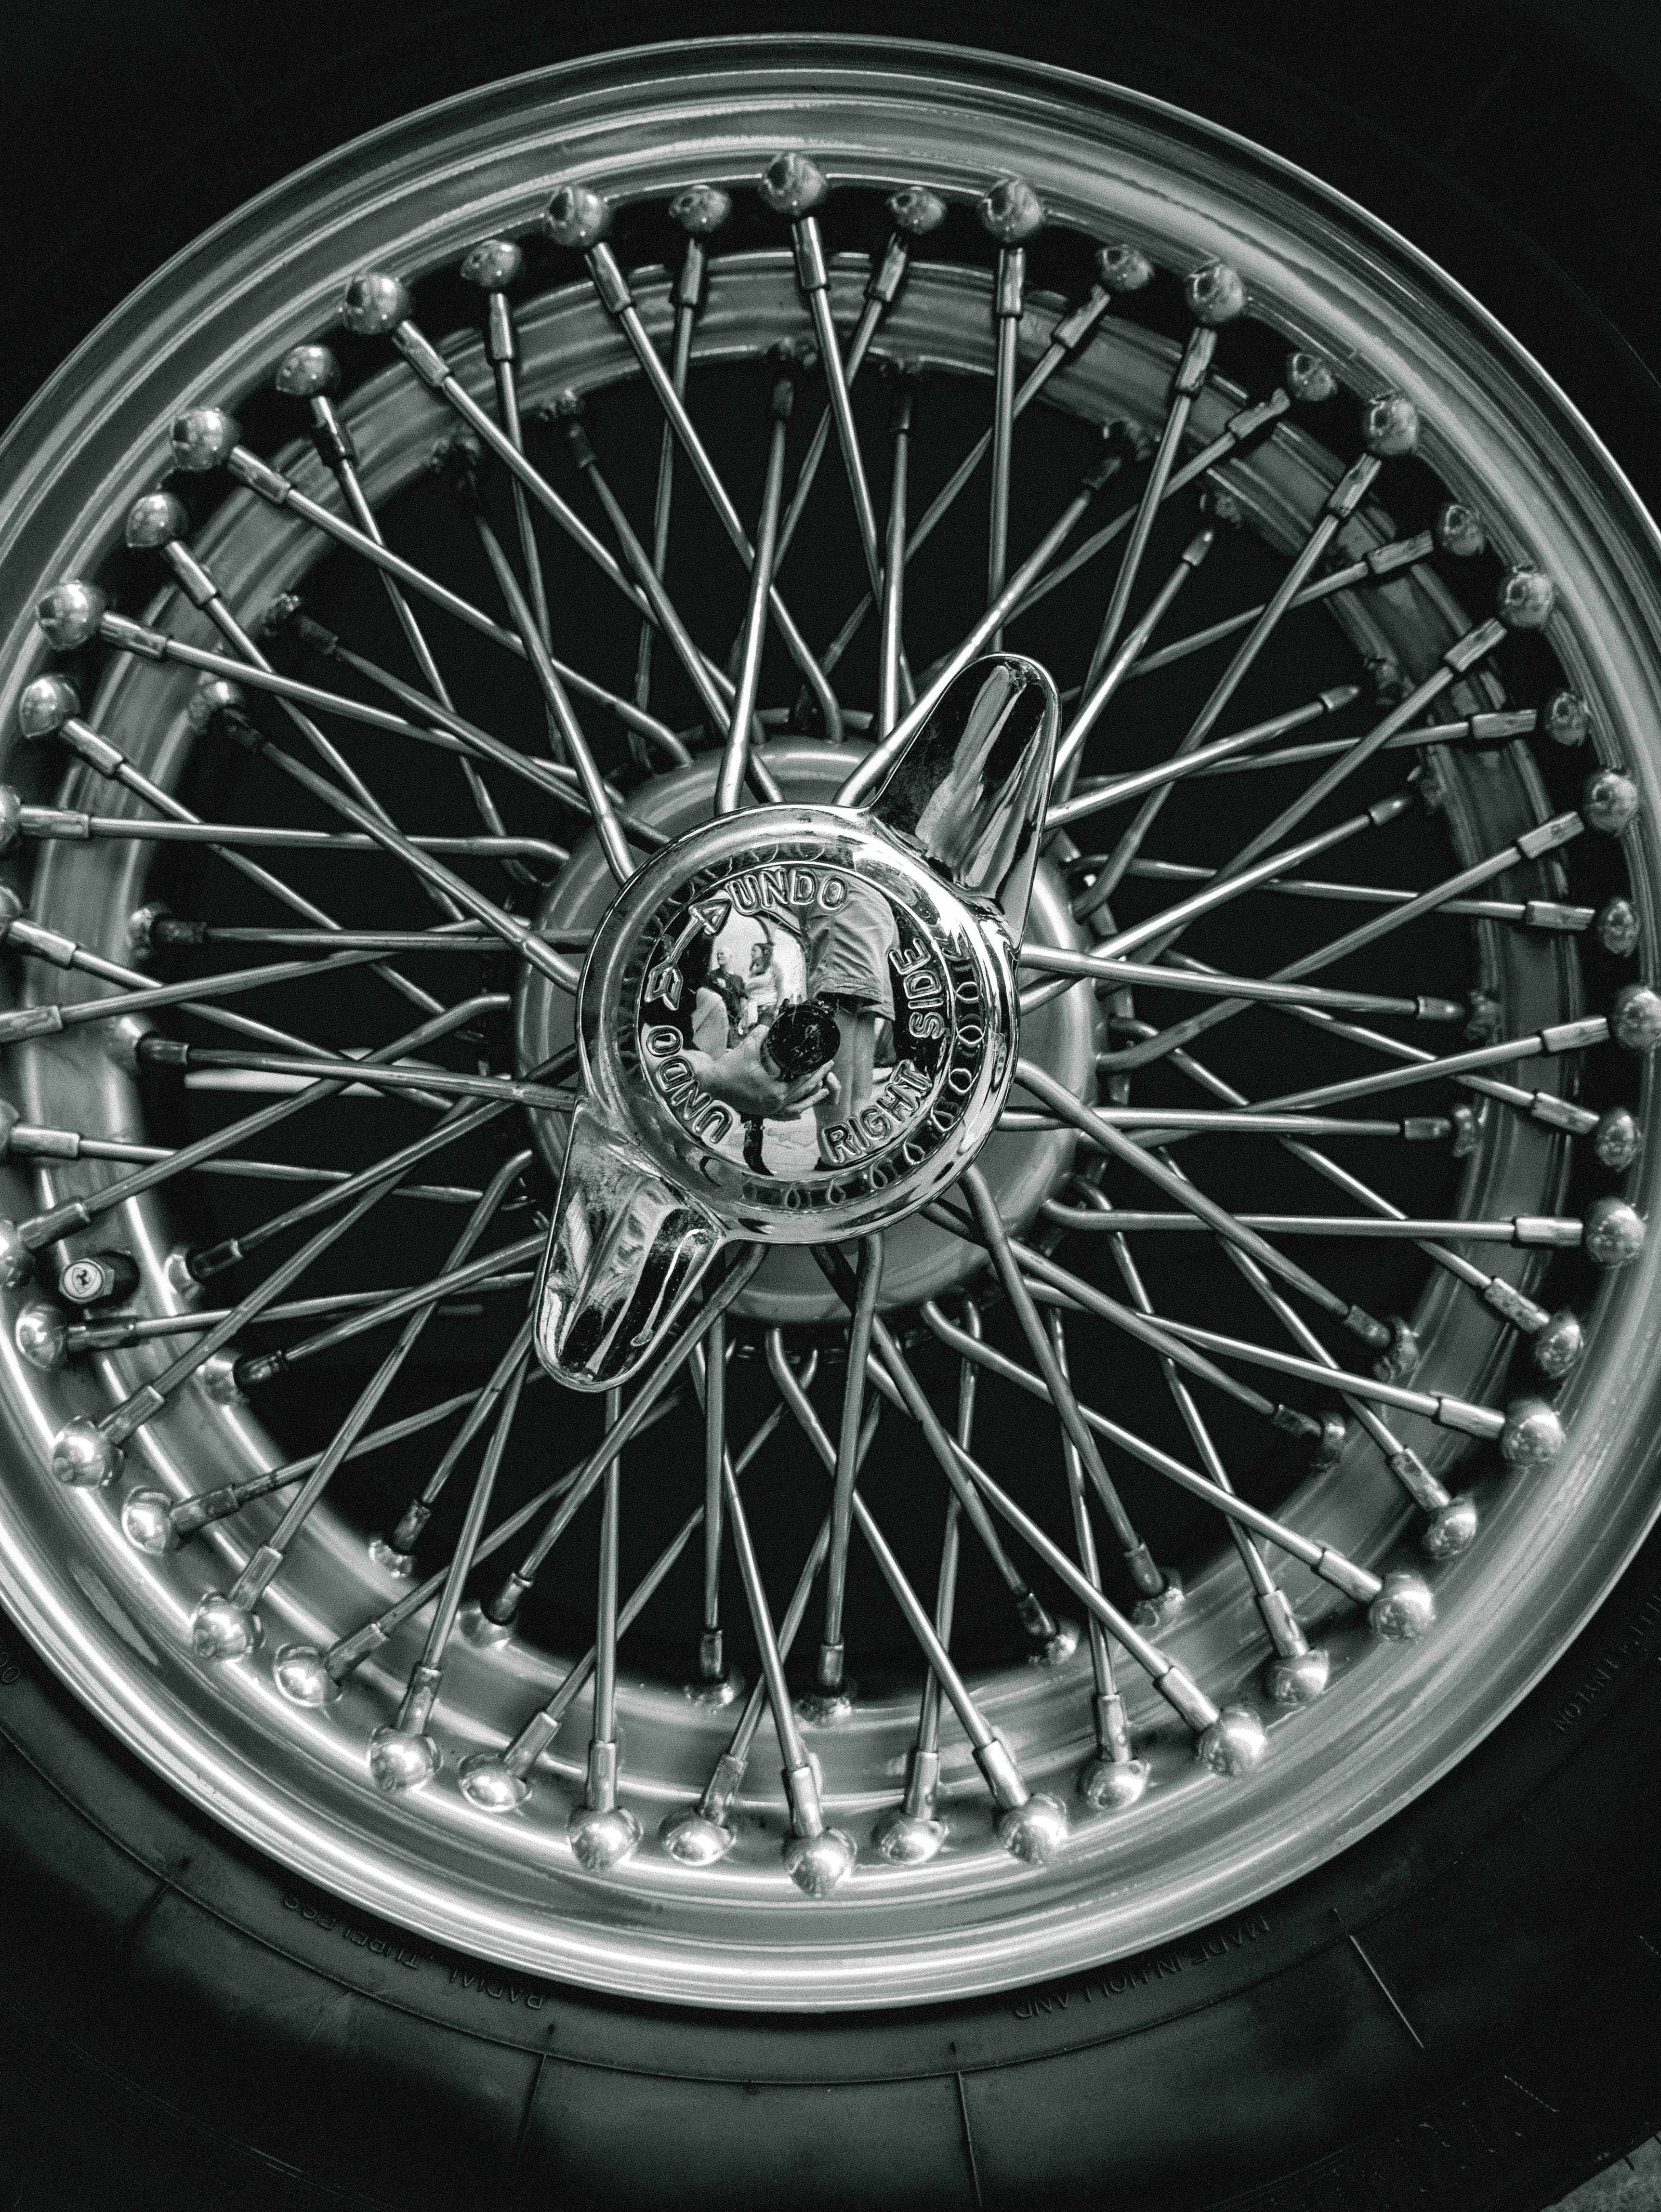 silver multi spoke wheel with tire